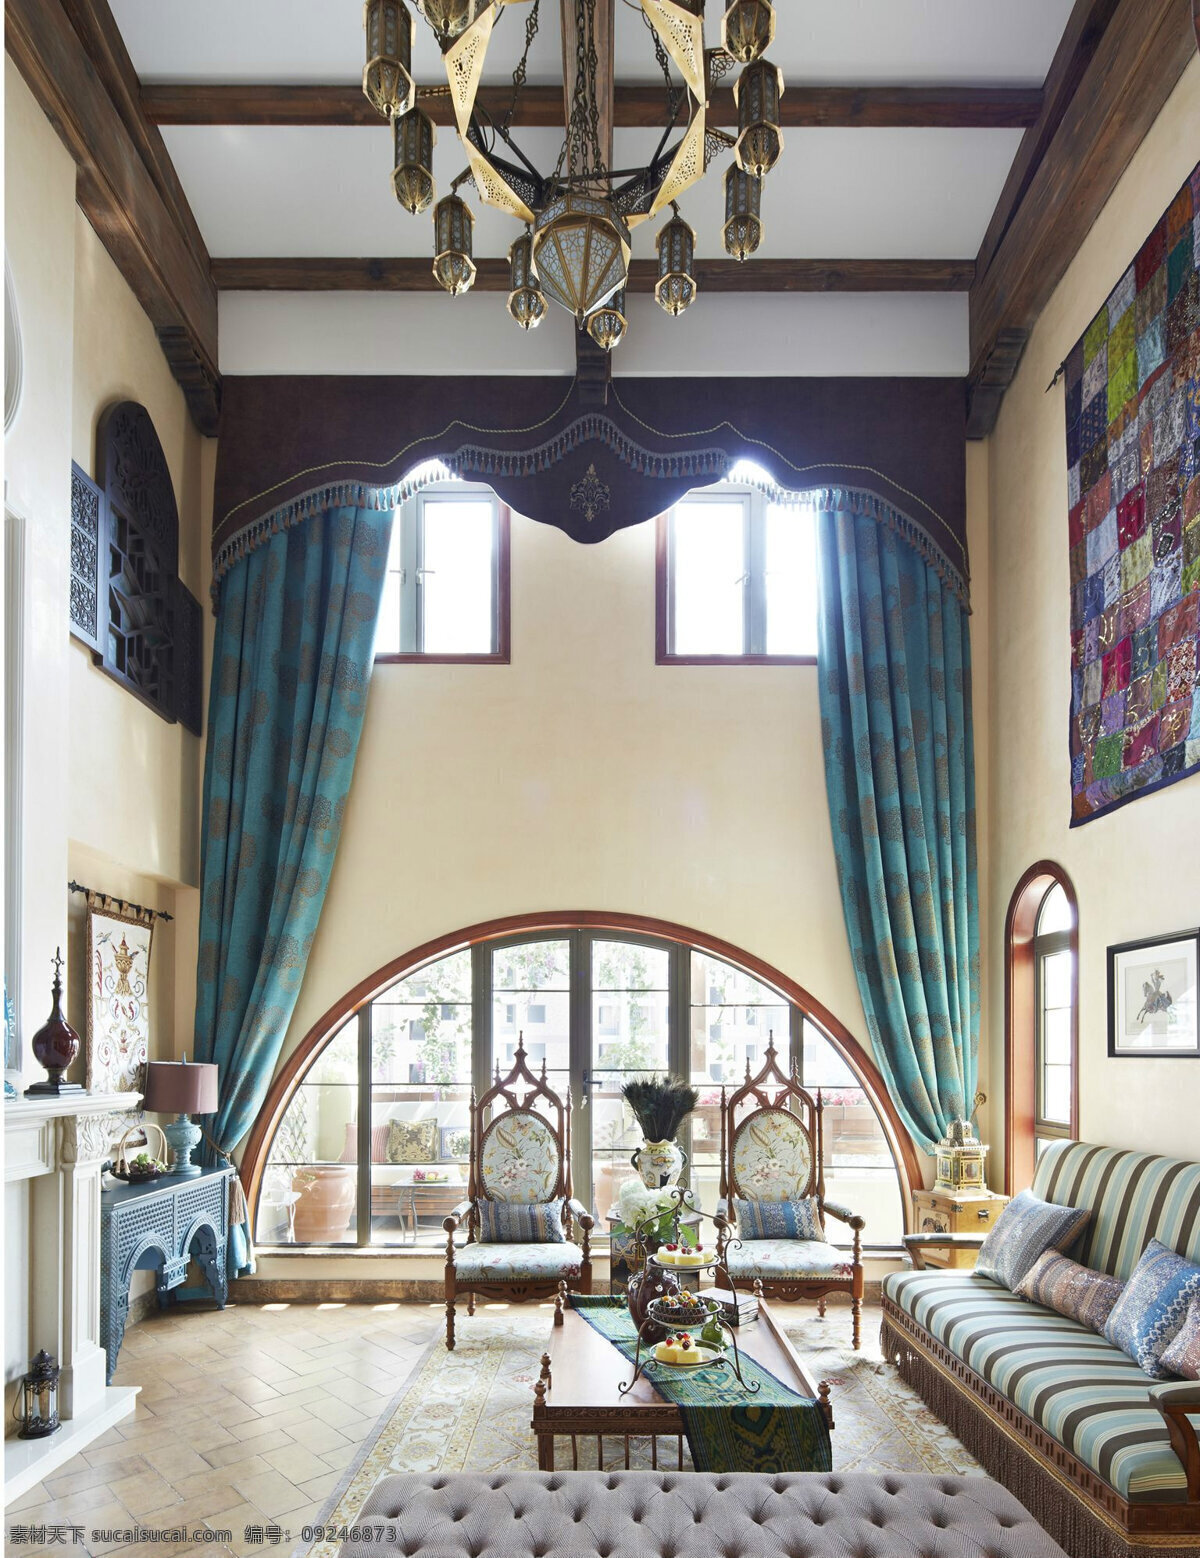 现代 简 欧 风格 客厅 装修 效果图 高清大图 简欧风格 室内设计 象牙白沙发 玄关